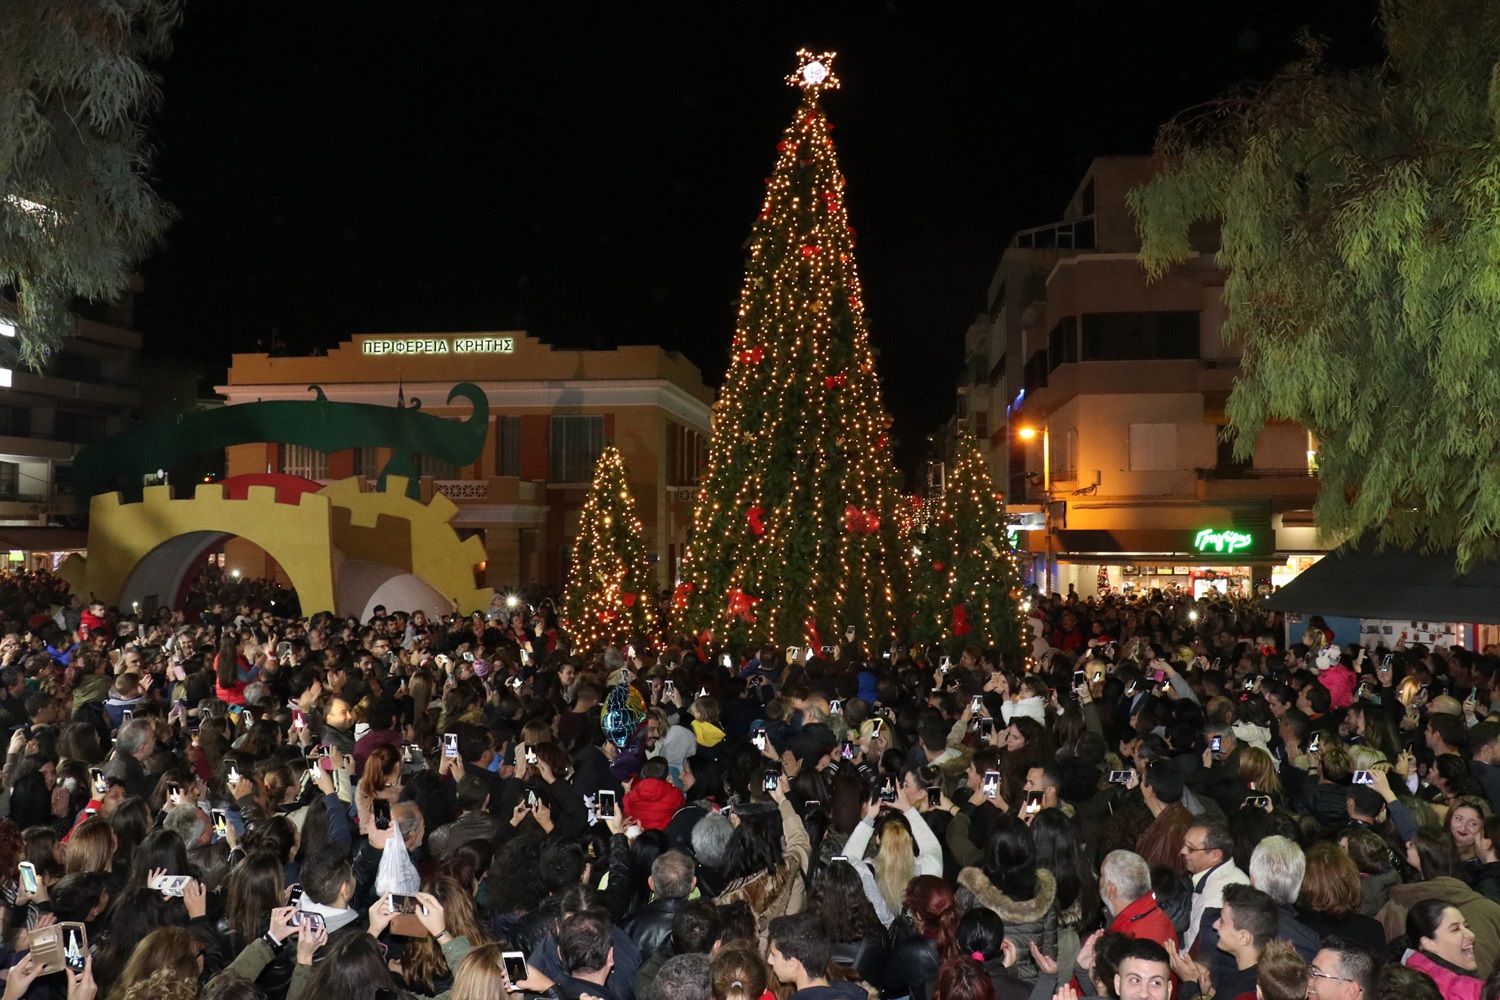 O δήμος που «ανάβει» το πρώτο χριστουγεννιάτικο δέντρο: Δείτε ποιος είναι